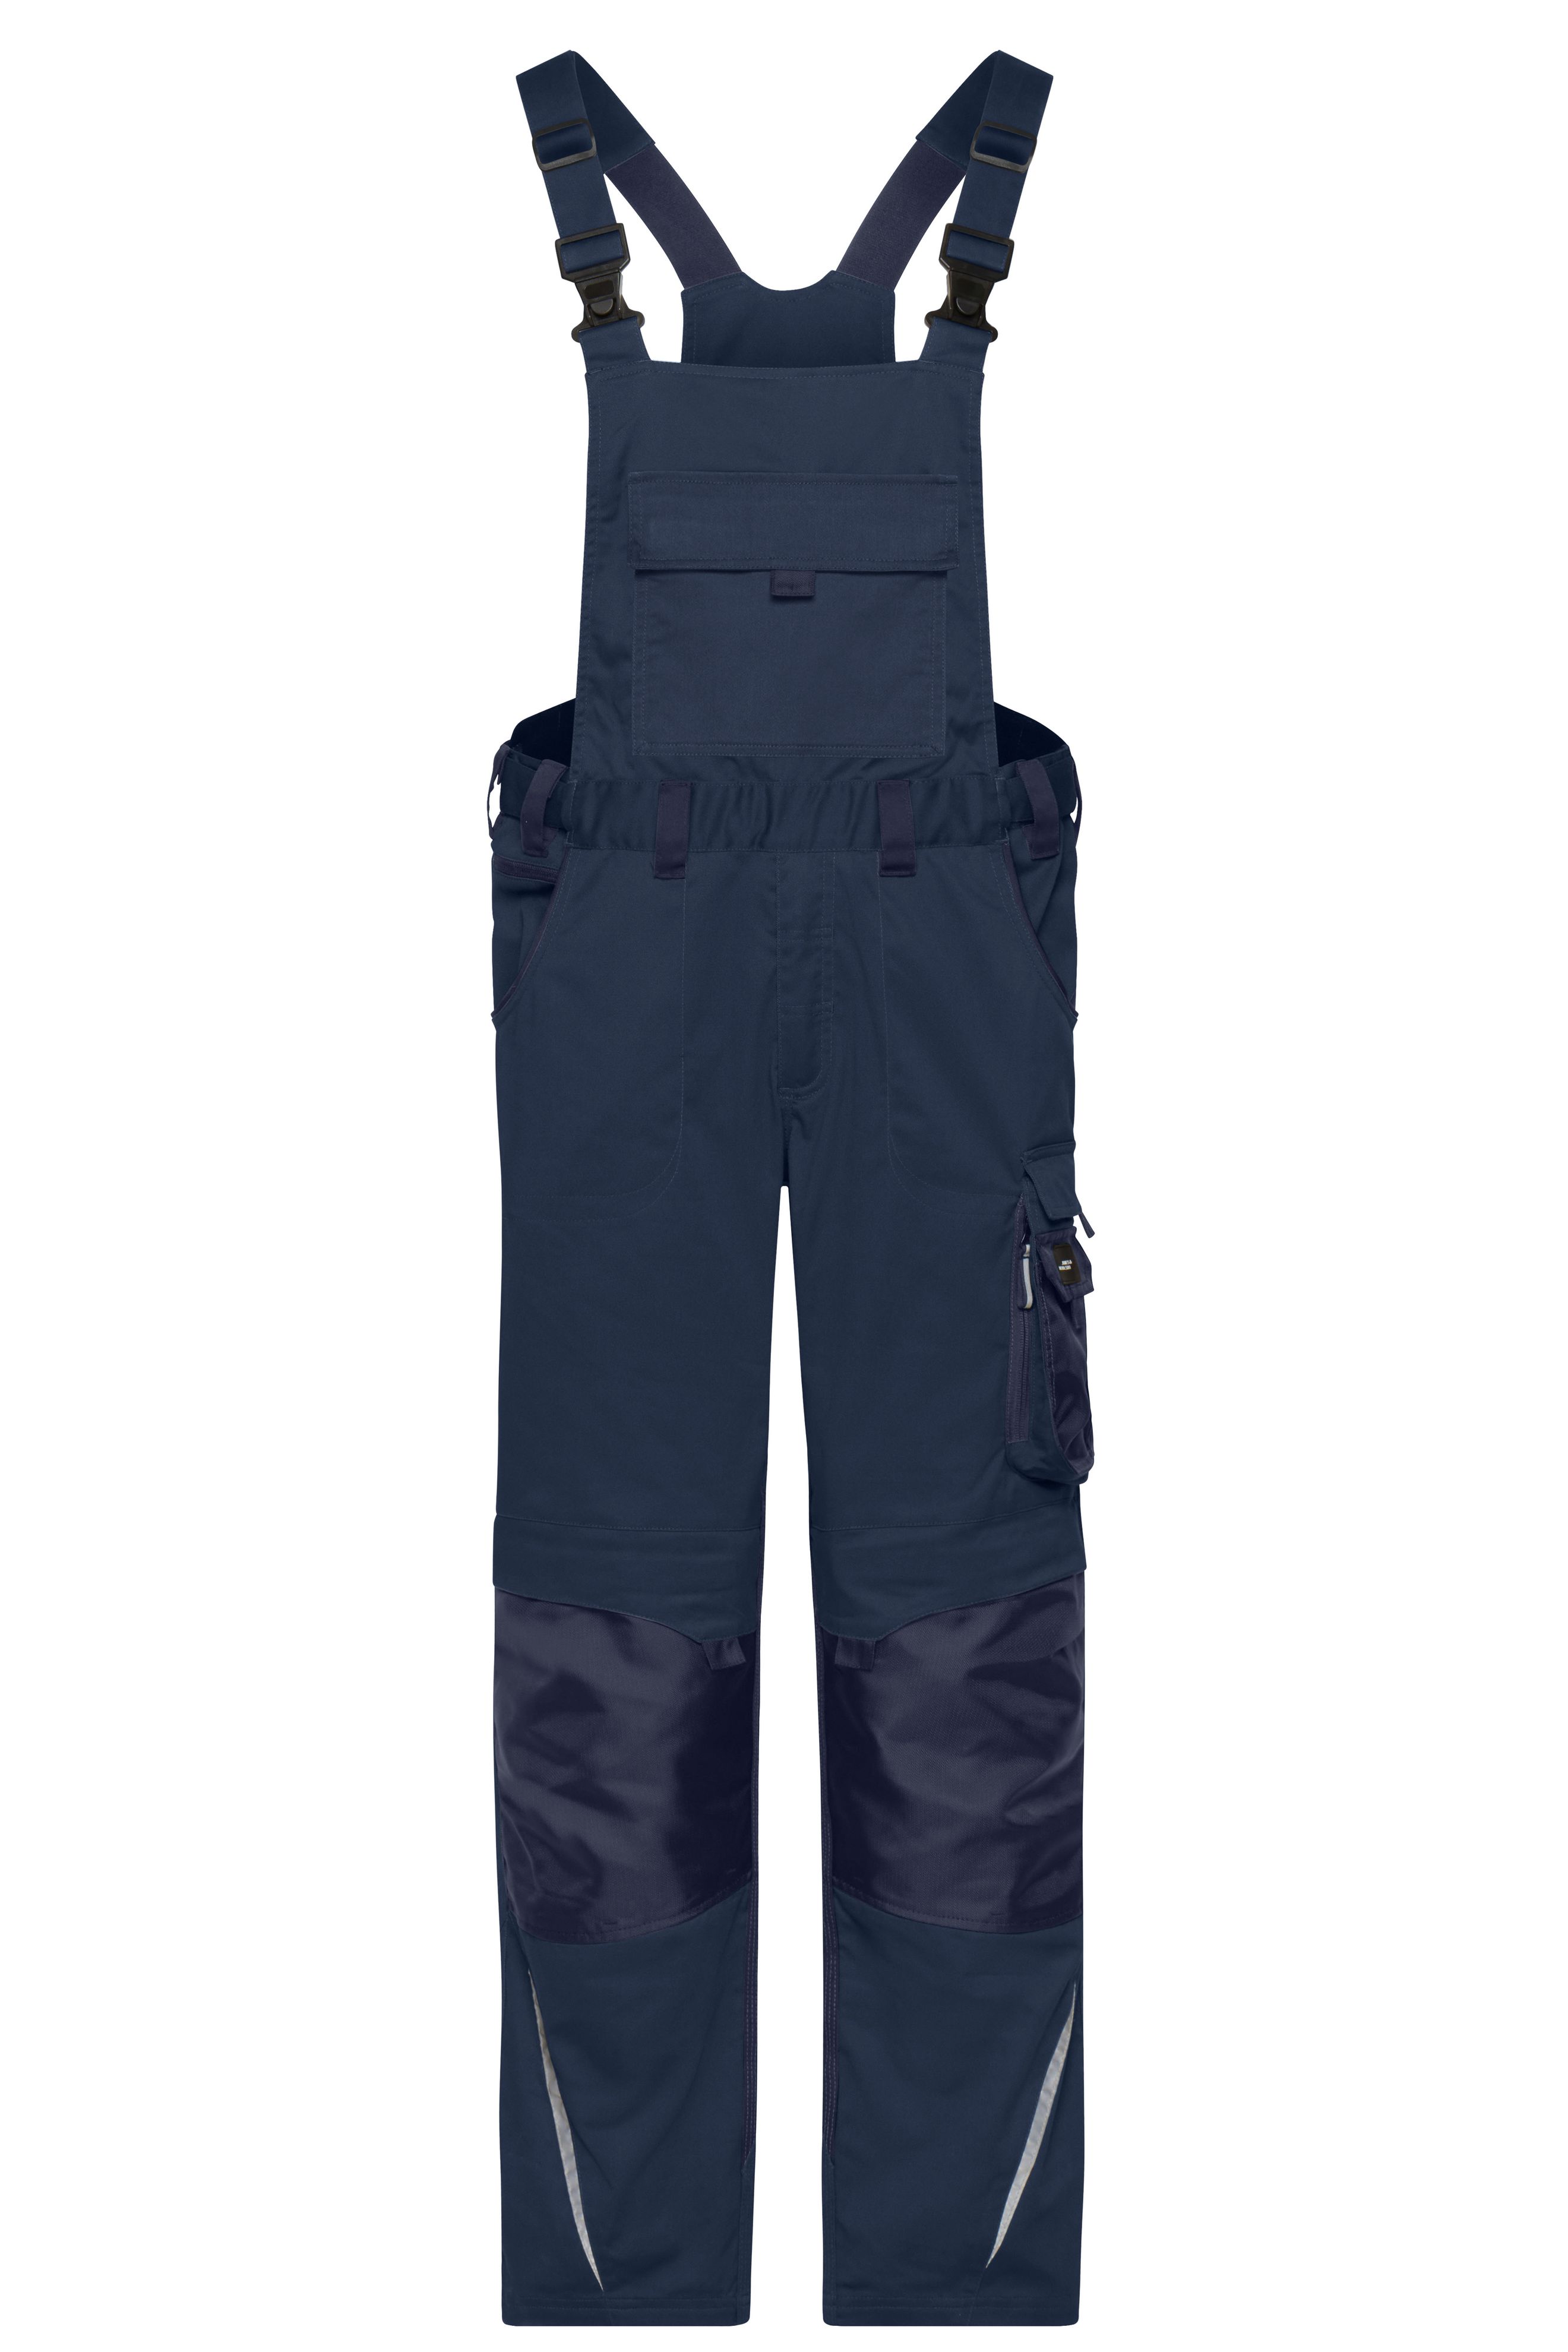 Workwear Pants with Bib - STRONG - JN1833 Spezialisierte Latzhose mit funktionellen Details und flexibel einstellbarem, elastischen Bund